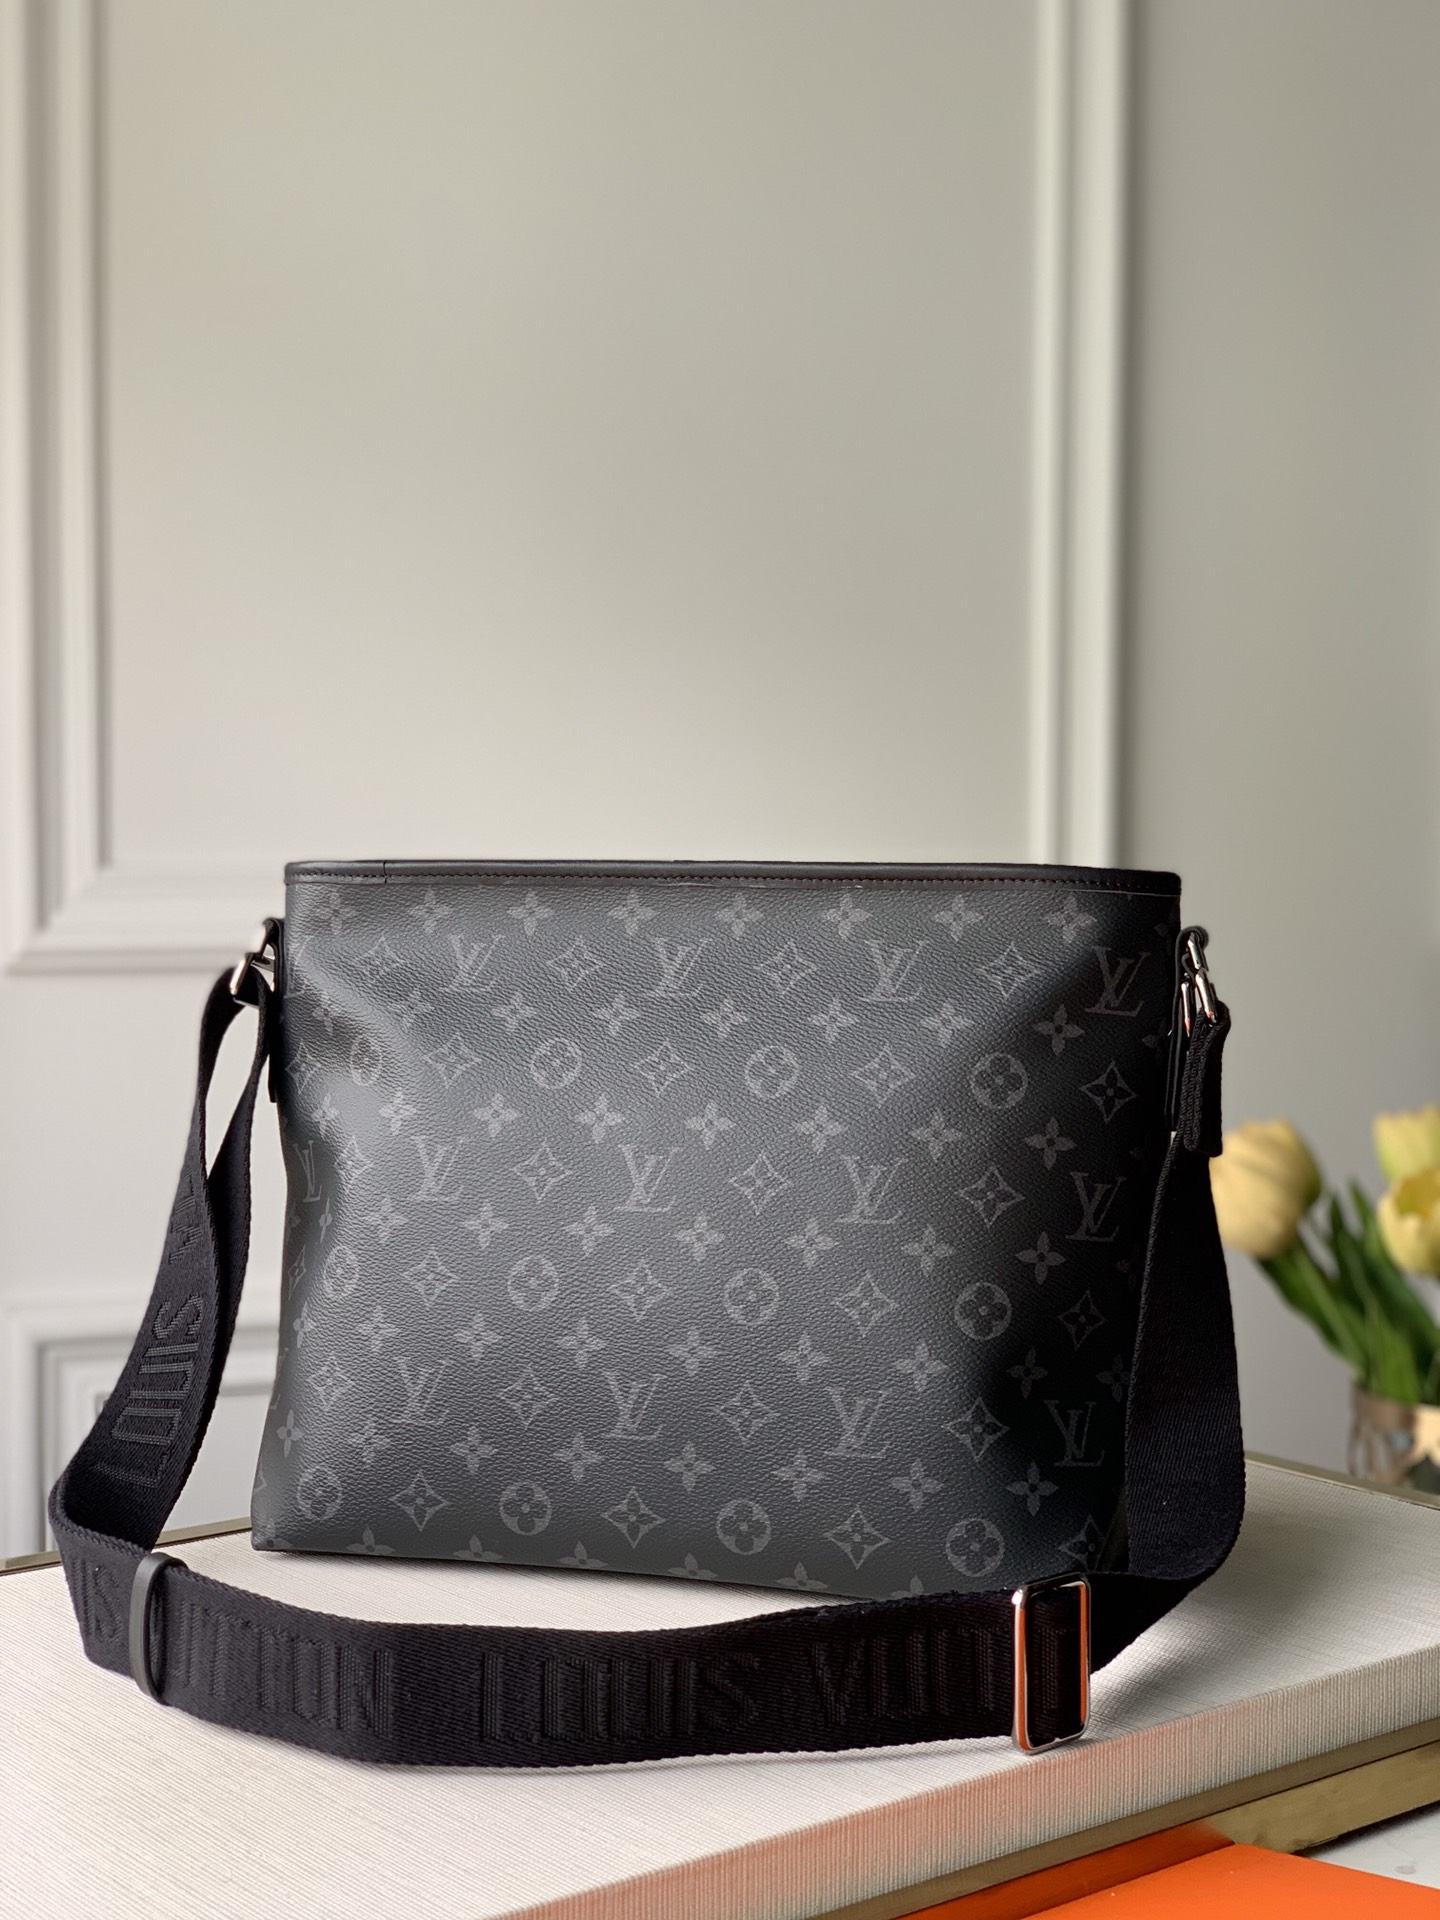 Louis Vuitton Besace Zippee Handbags 